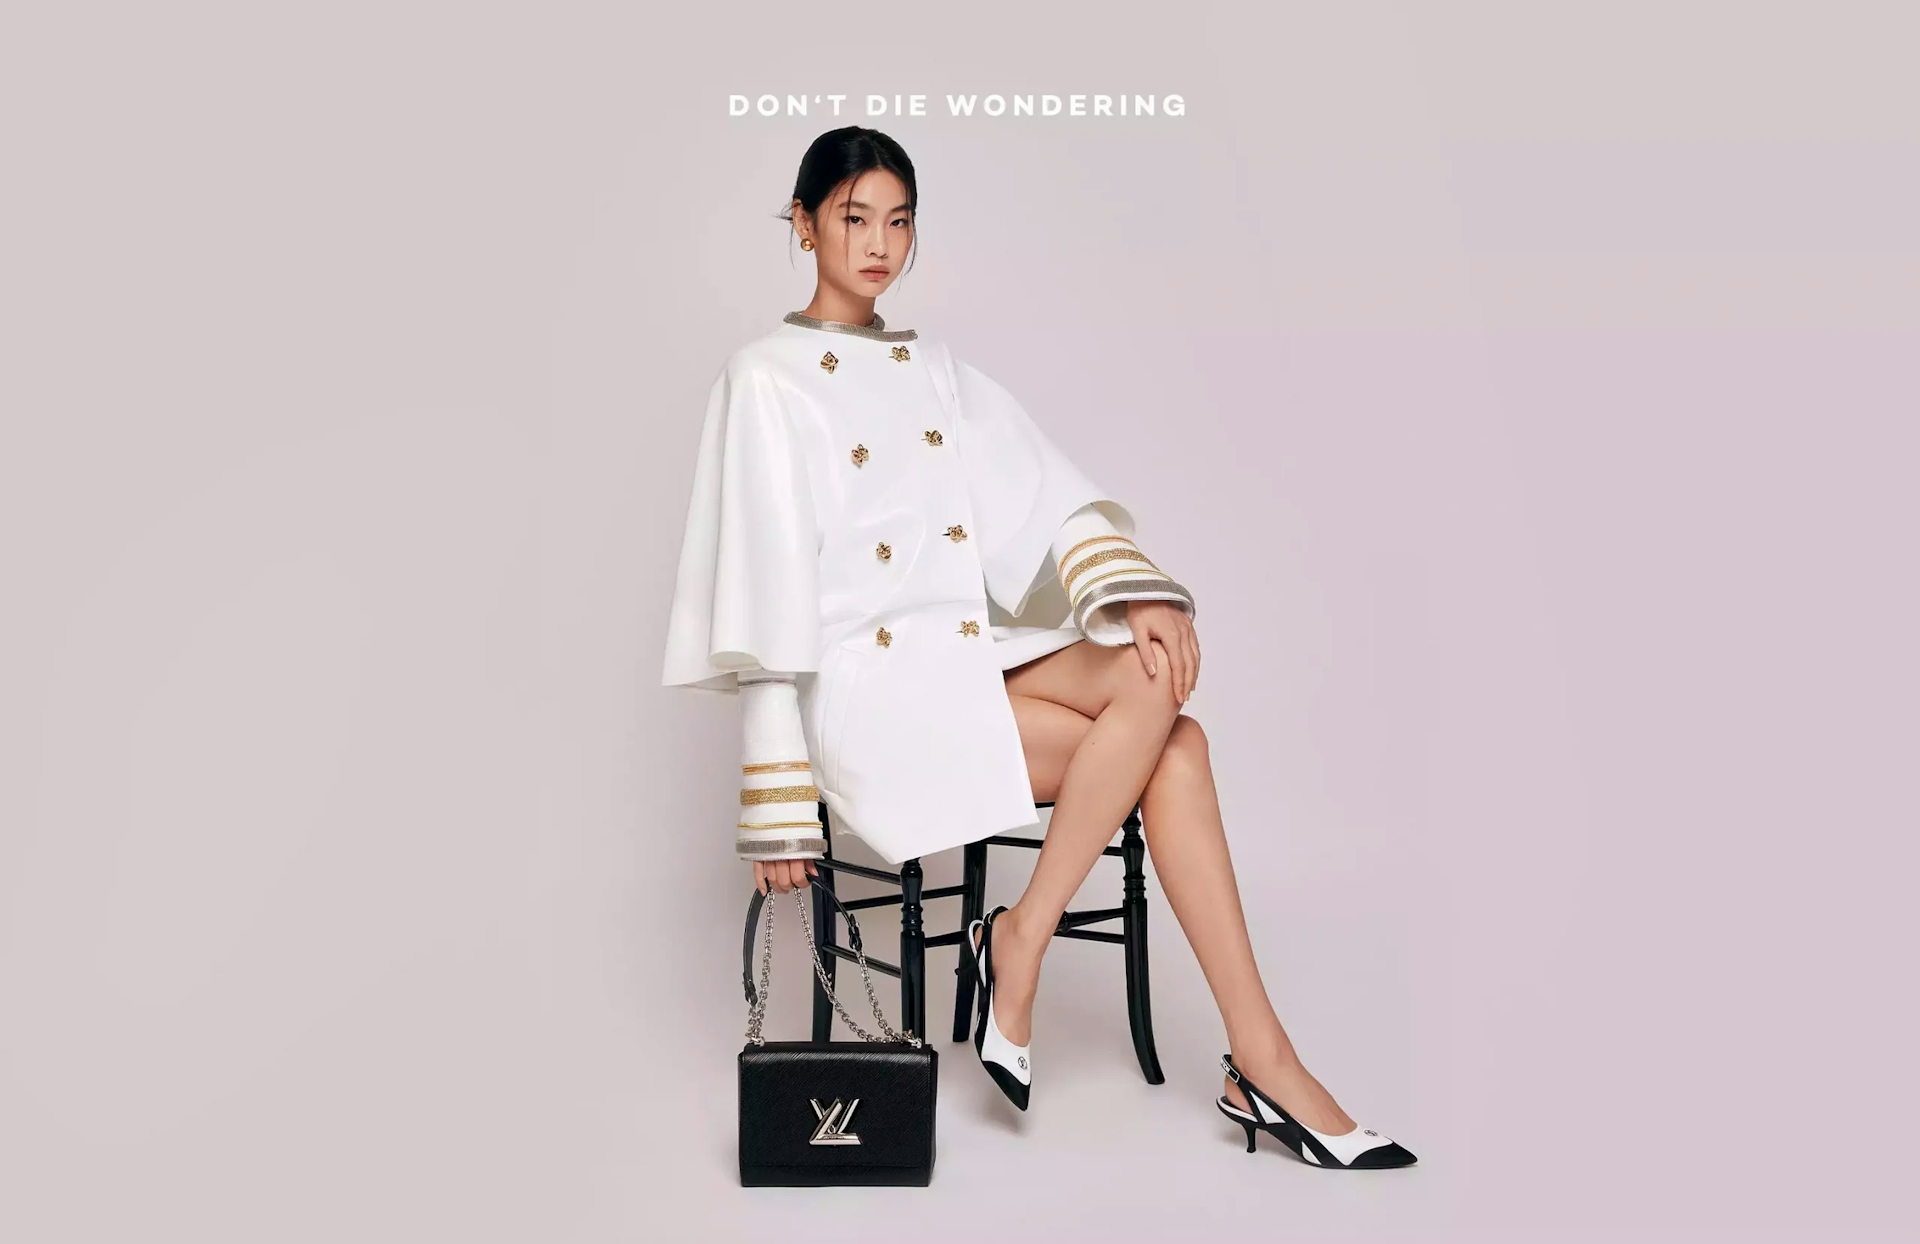 HoYeon Jung | Meet The New Global House Ambassador For Louis Vuitton